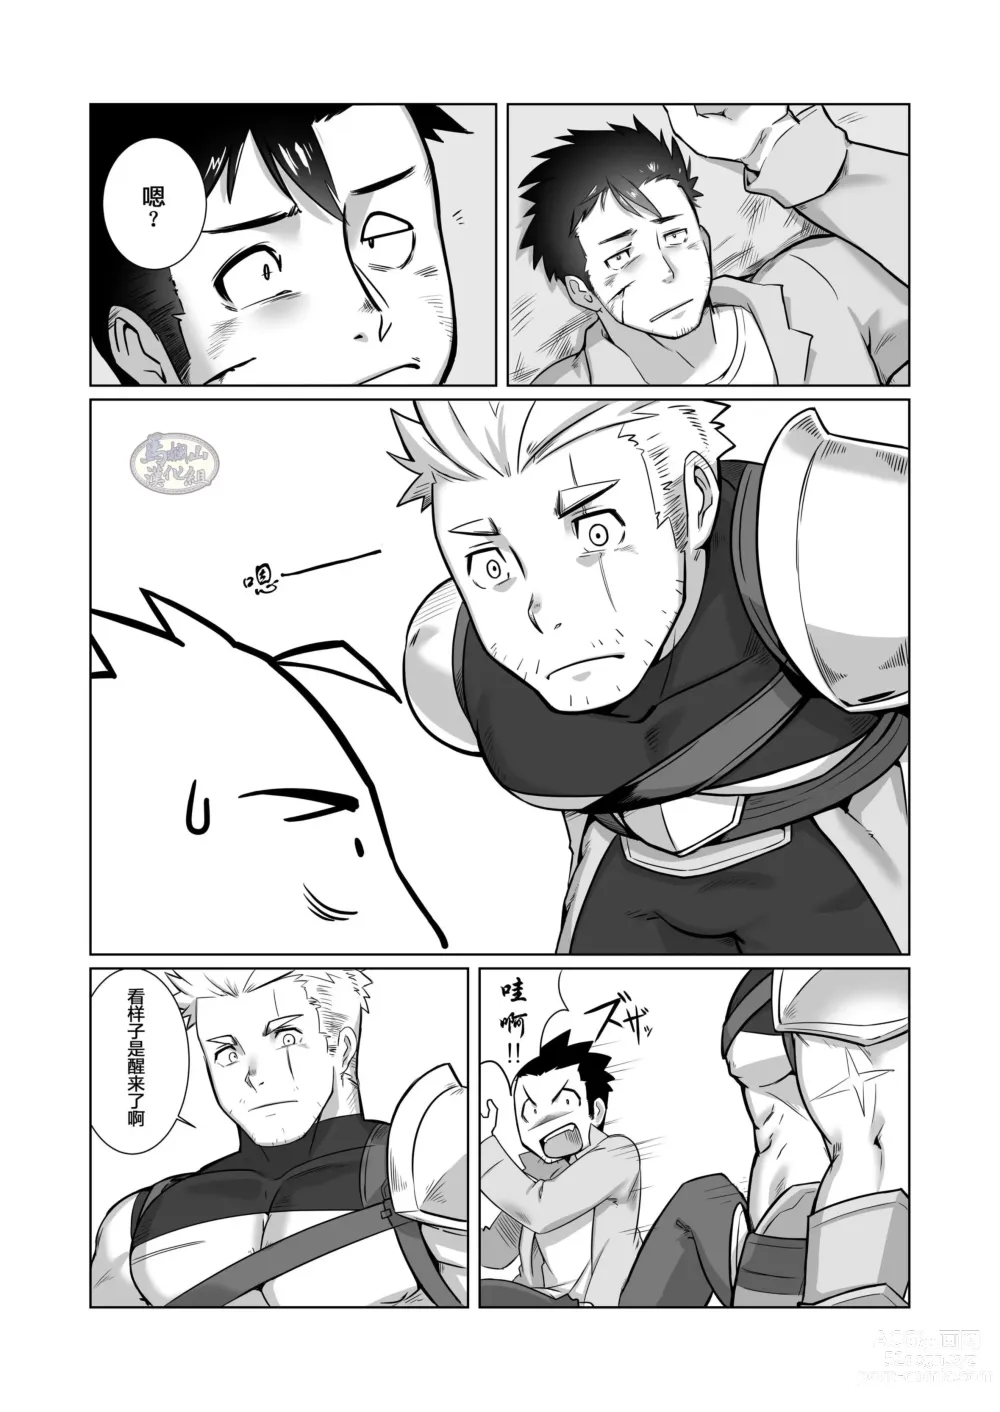 Page 5 of doujinshi 关于我在转生之后身边全是肌肉男的奇闻轶事